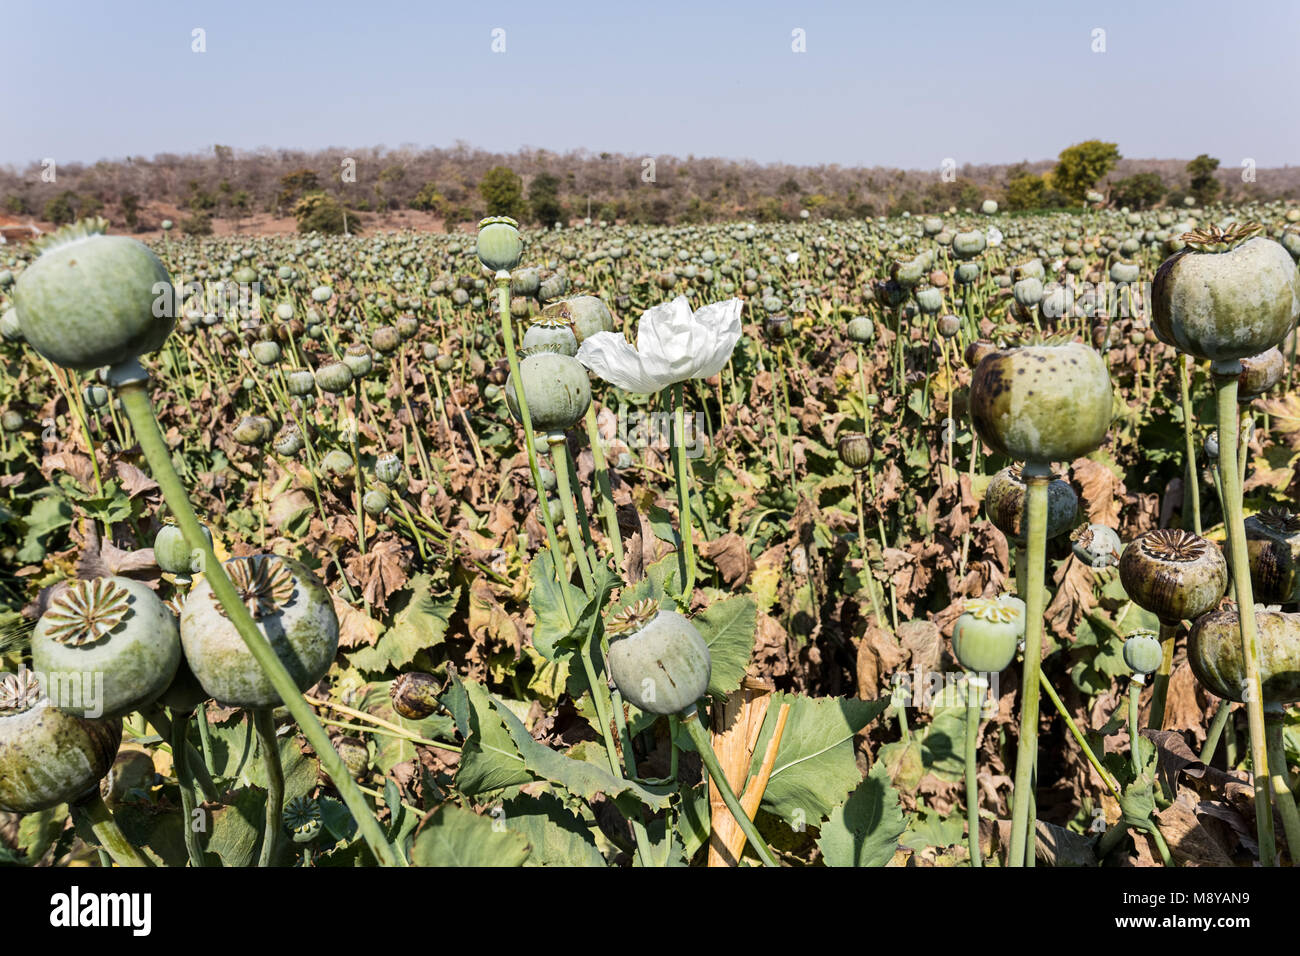 Opium poppies growing in rural Nimbahera - Rajasthan, India Stock Photo